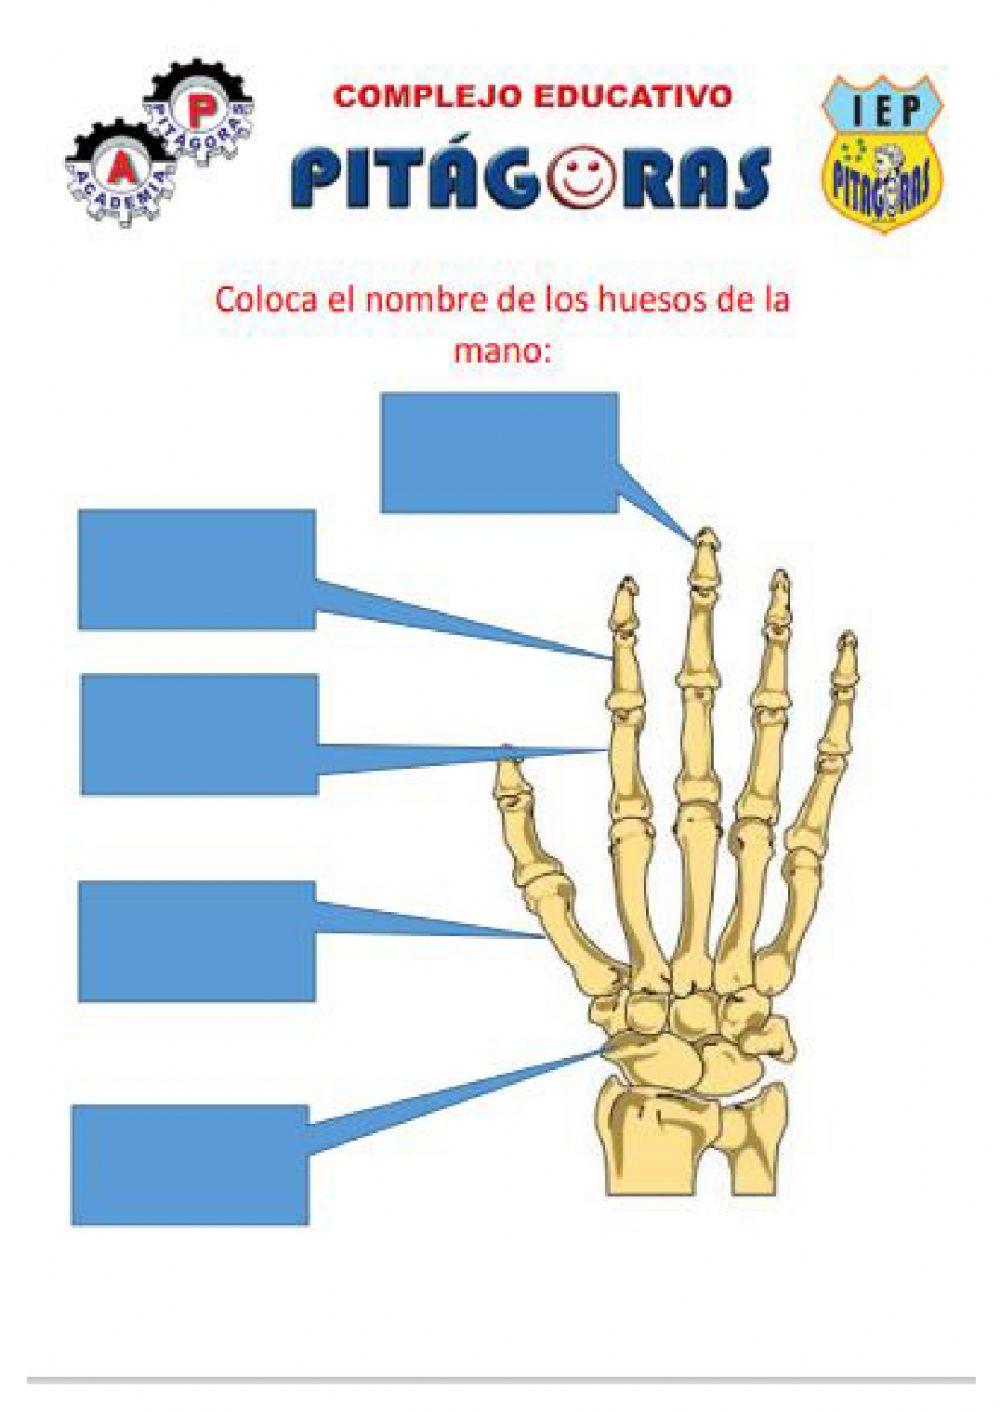 Los huesos de la mano